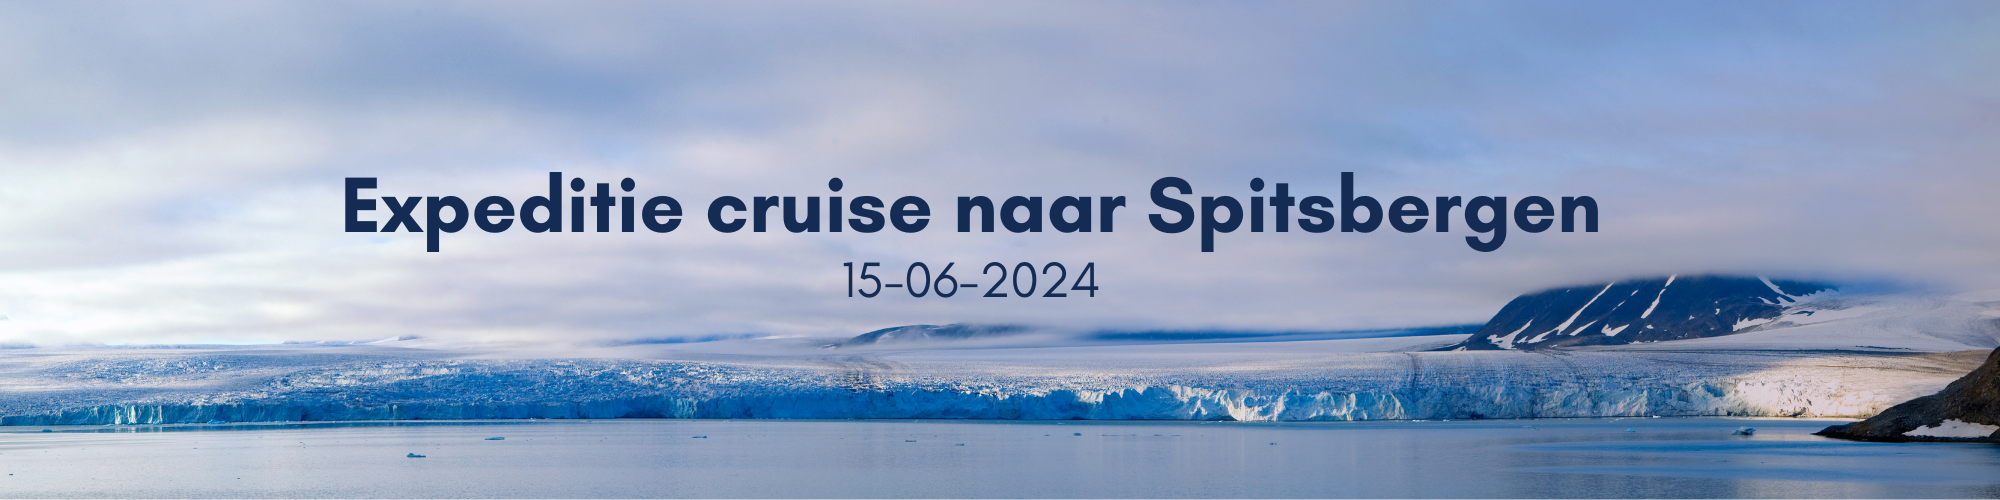 Expeditie cruise naar Spitsbergen 15-06-2024